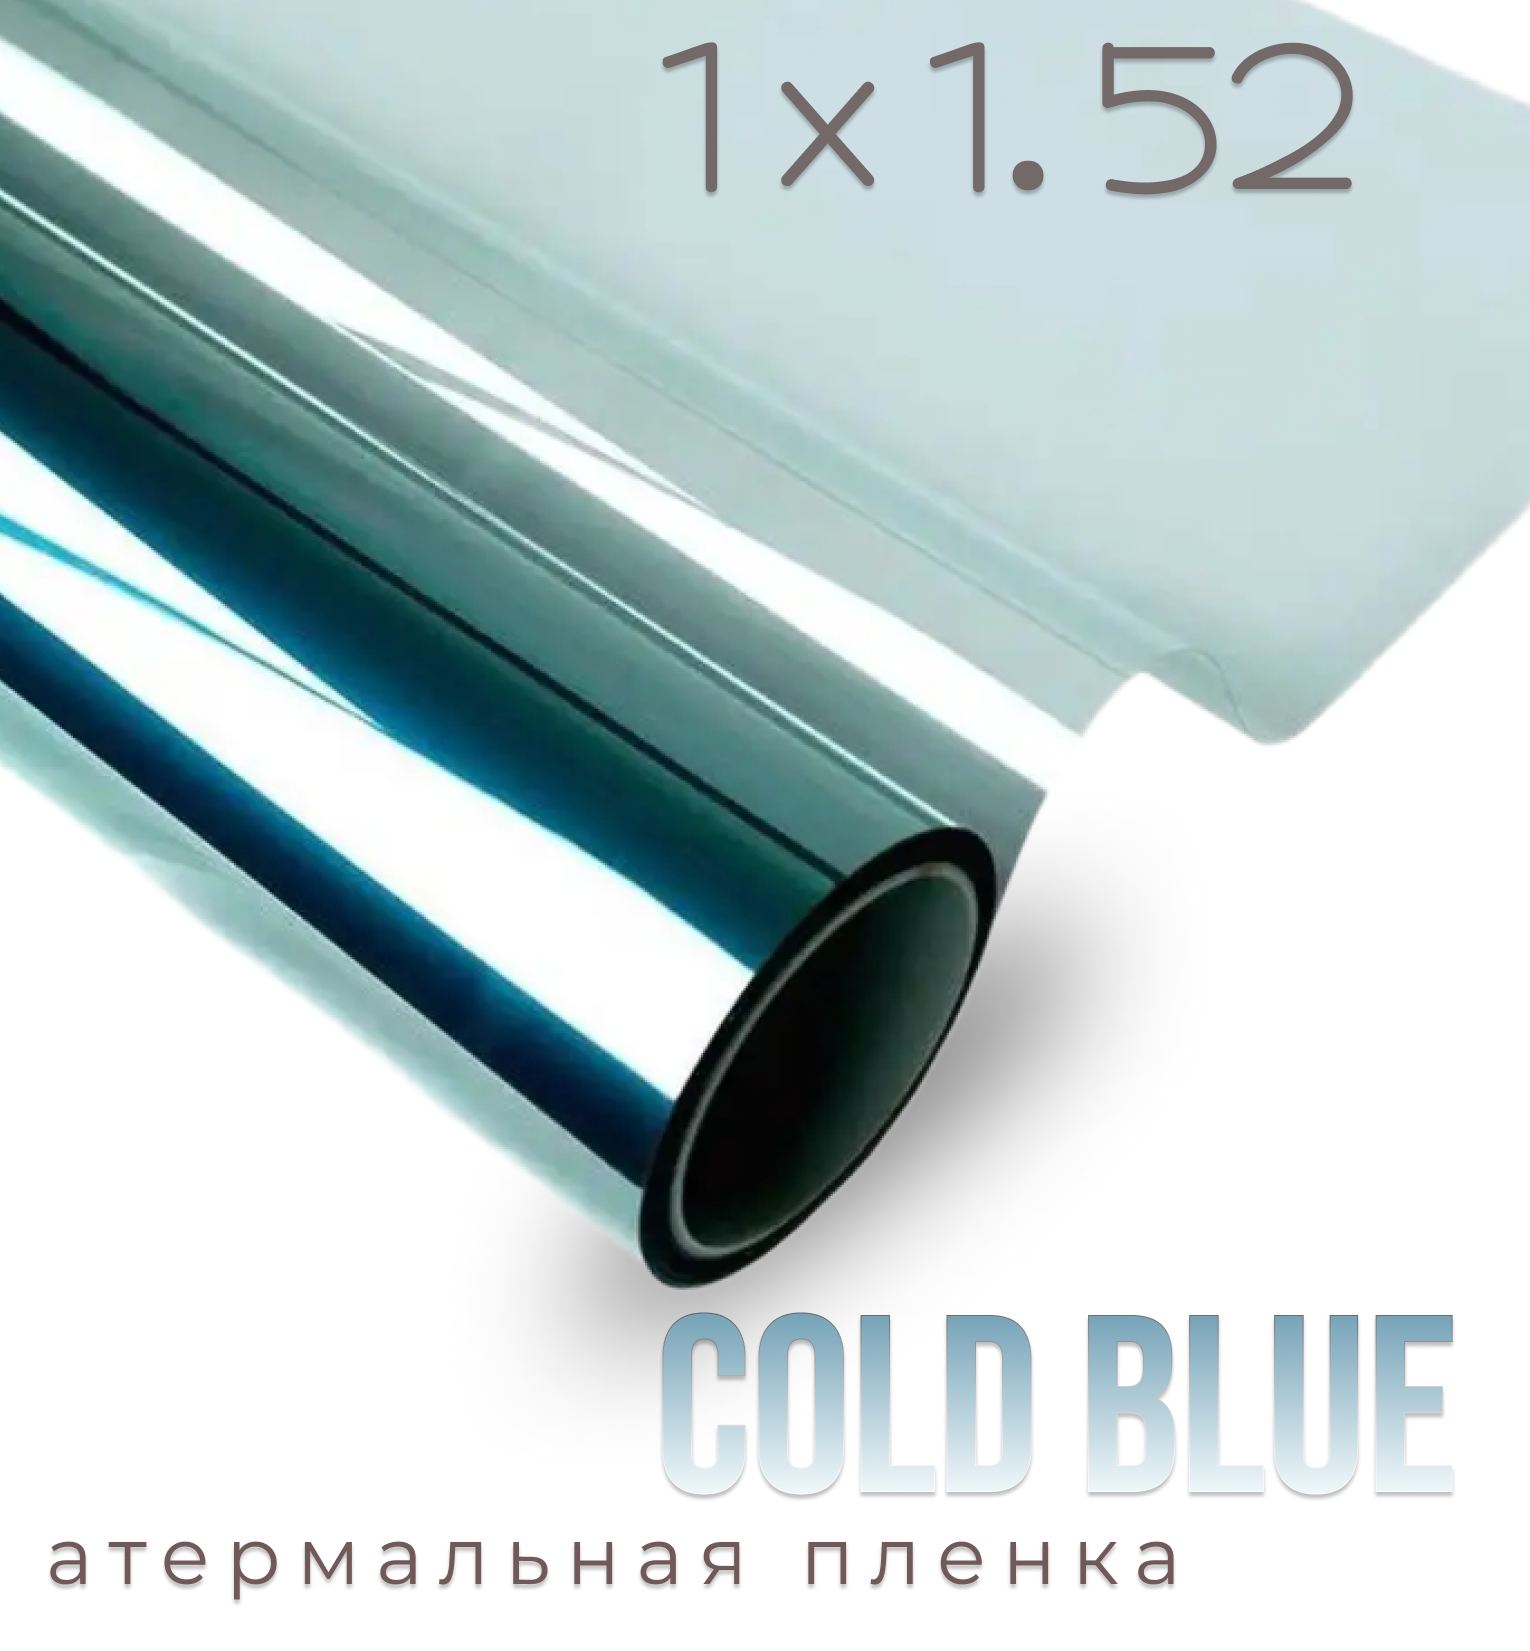 Пленка солнцезащитная атермальная на окна Cold Blue 7090, 1,52х1